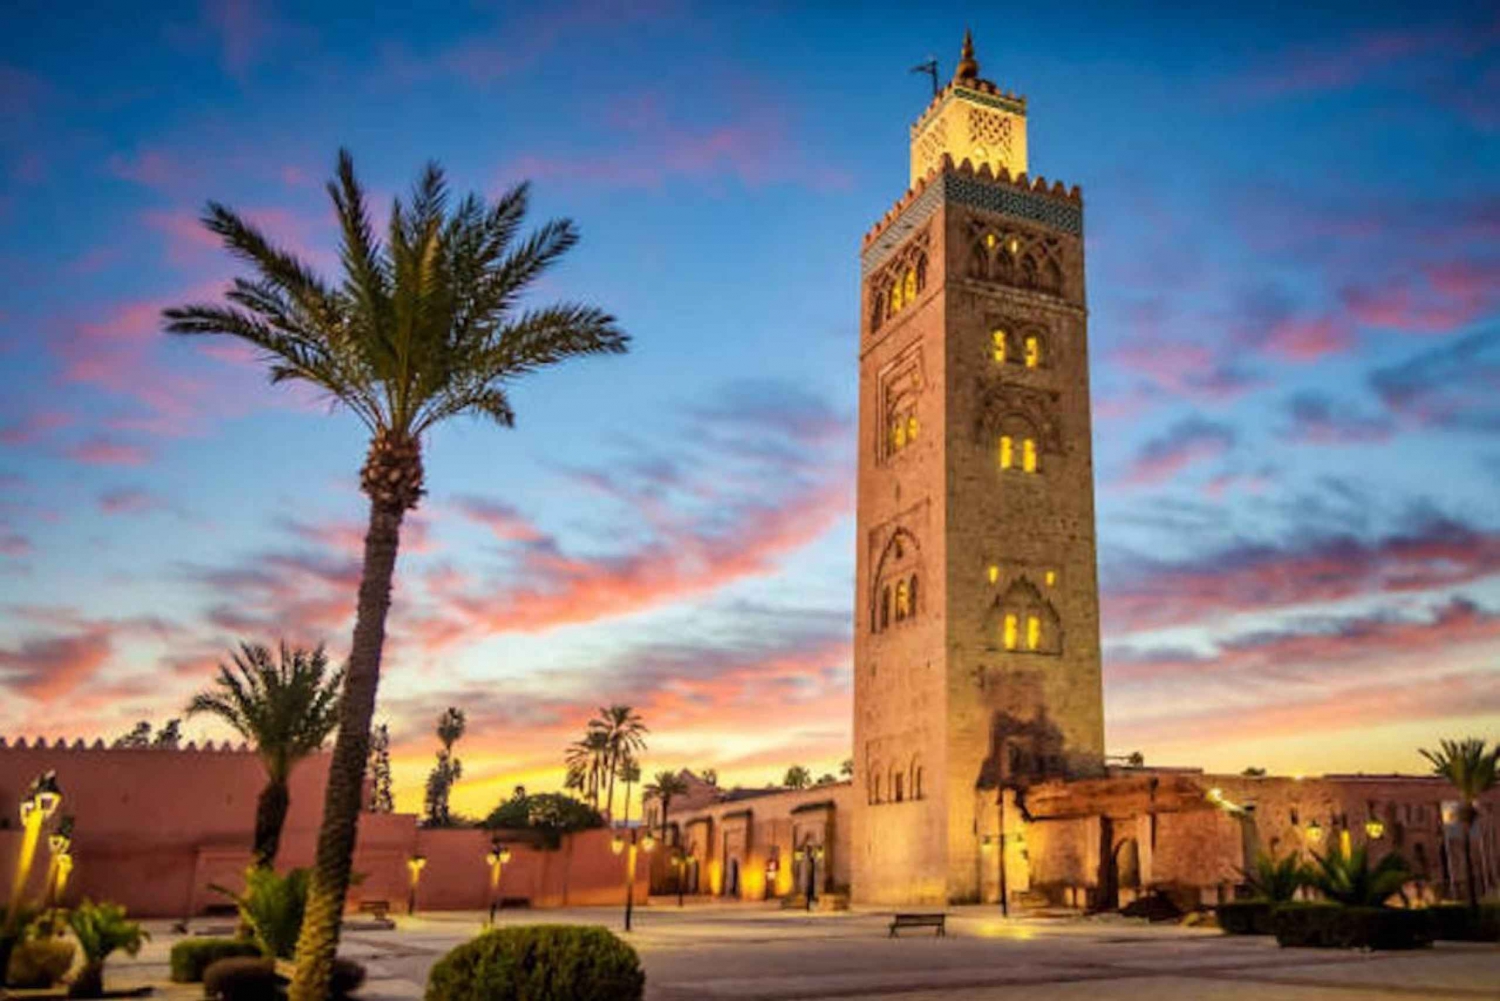 From Marrakech: 3-Day Luxury Desert Tour to Fes via Merzouga